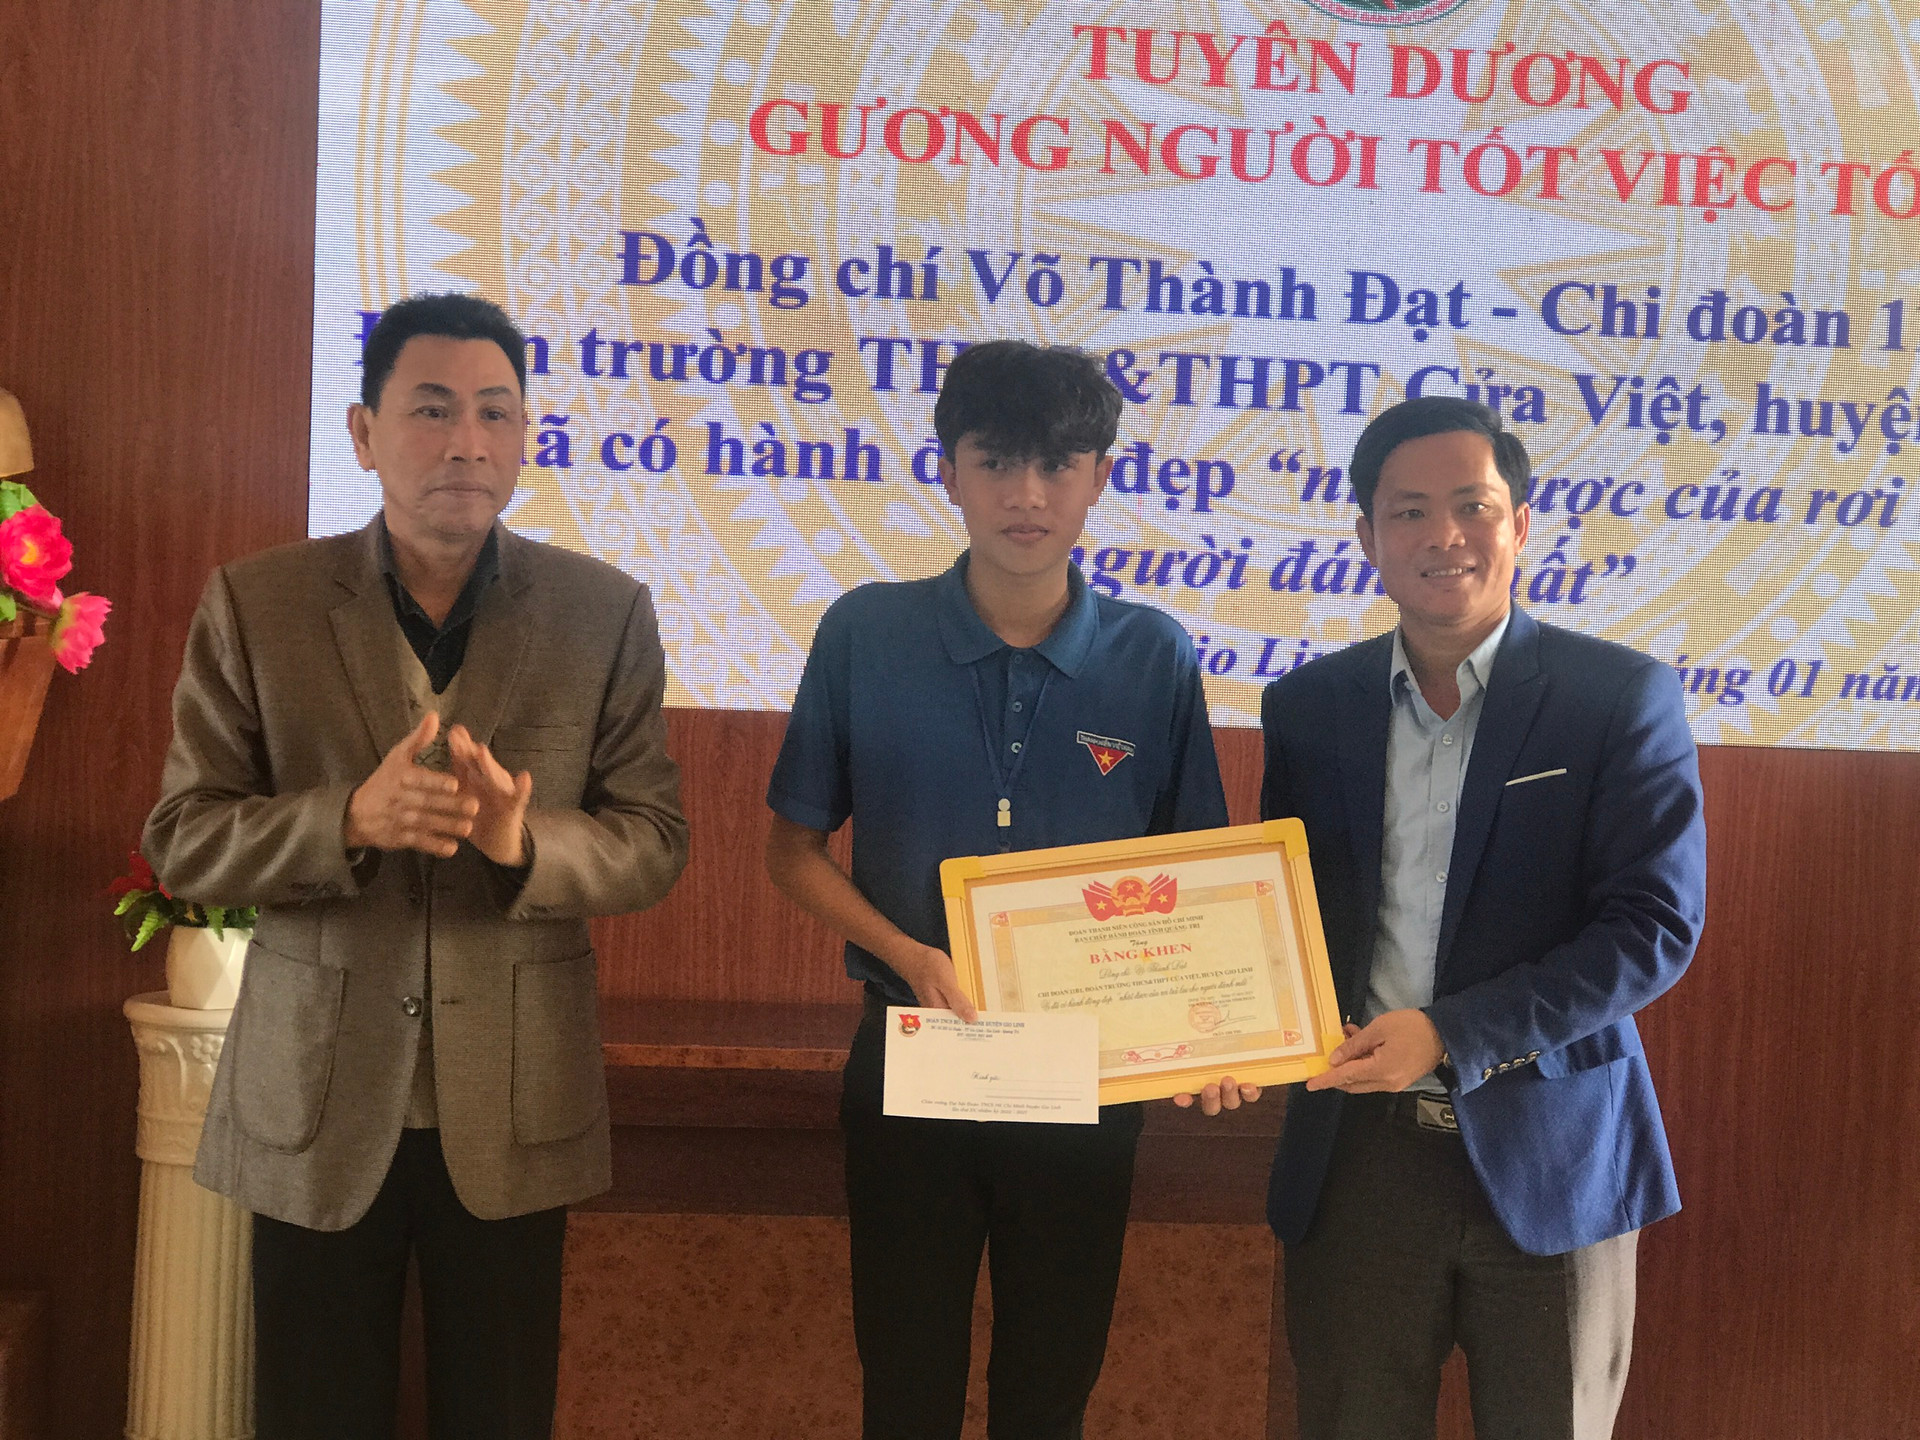 Đoàn TNCS Hồ Chí Minh tỉnh Quảng Trị phối hợp với Trường THCS và THPT Cửa Việt tuyên dương em Võ Thành Đạt.